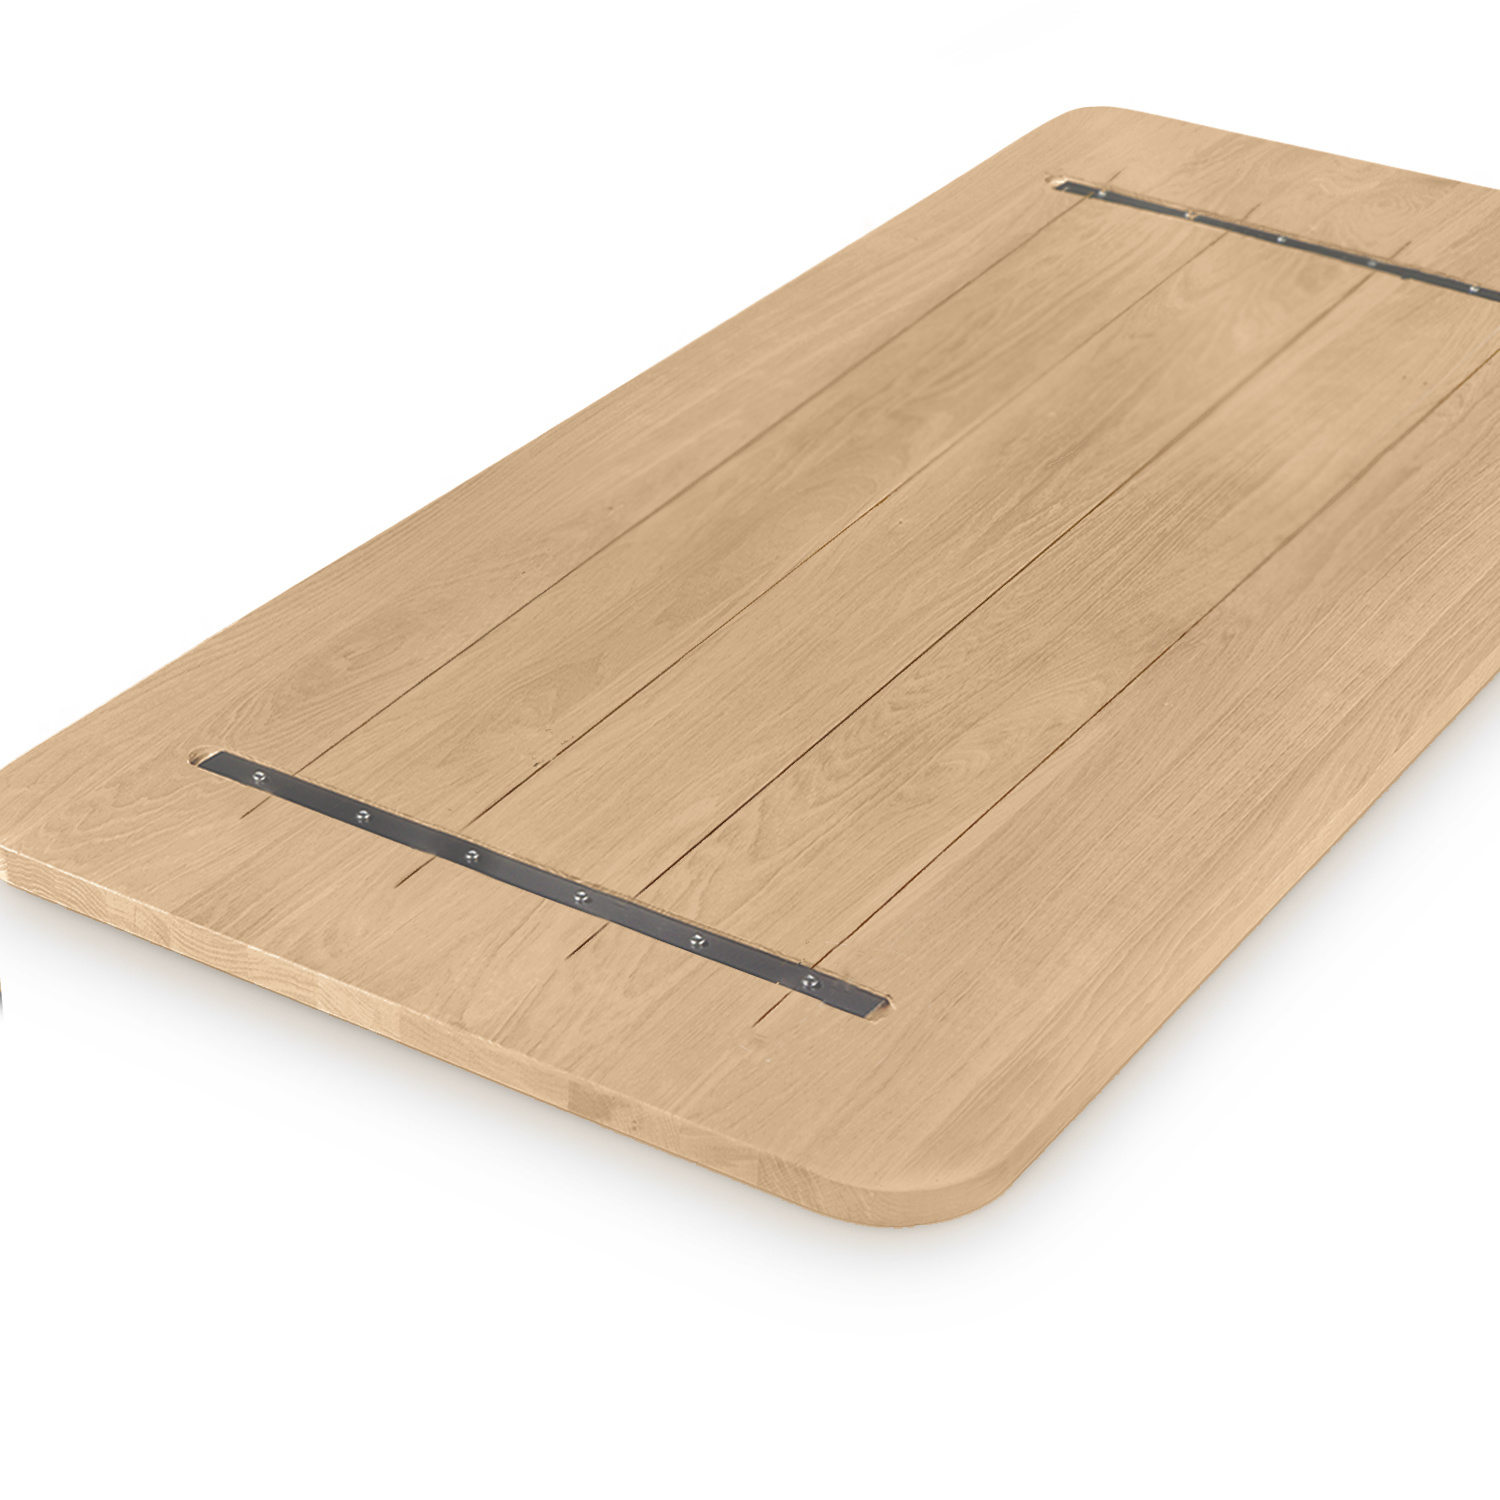  Eiken tafelblad met ronde hoeken - op maat - 4 cm dik (1-laag) - rustiek Europees eikenhout - verlijmd kd 8-12% - 50-120x50-350 cm  - Afgeronde hoeken radius 5, 8, of 10 cm